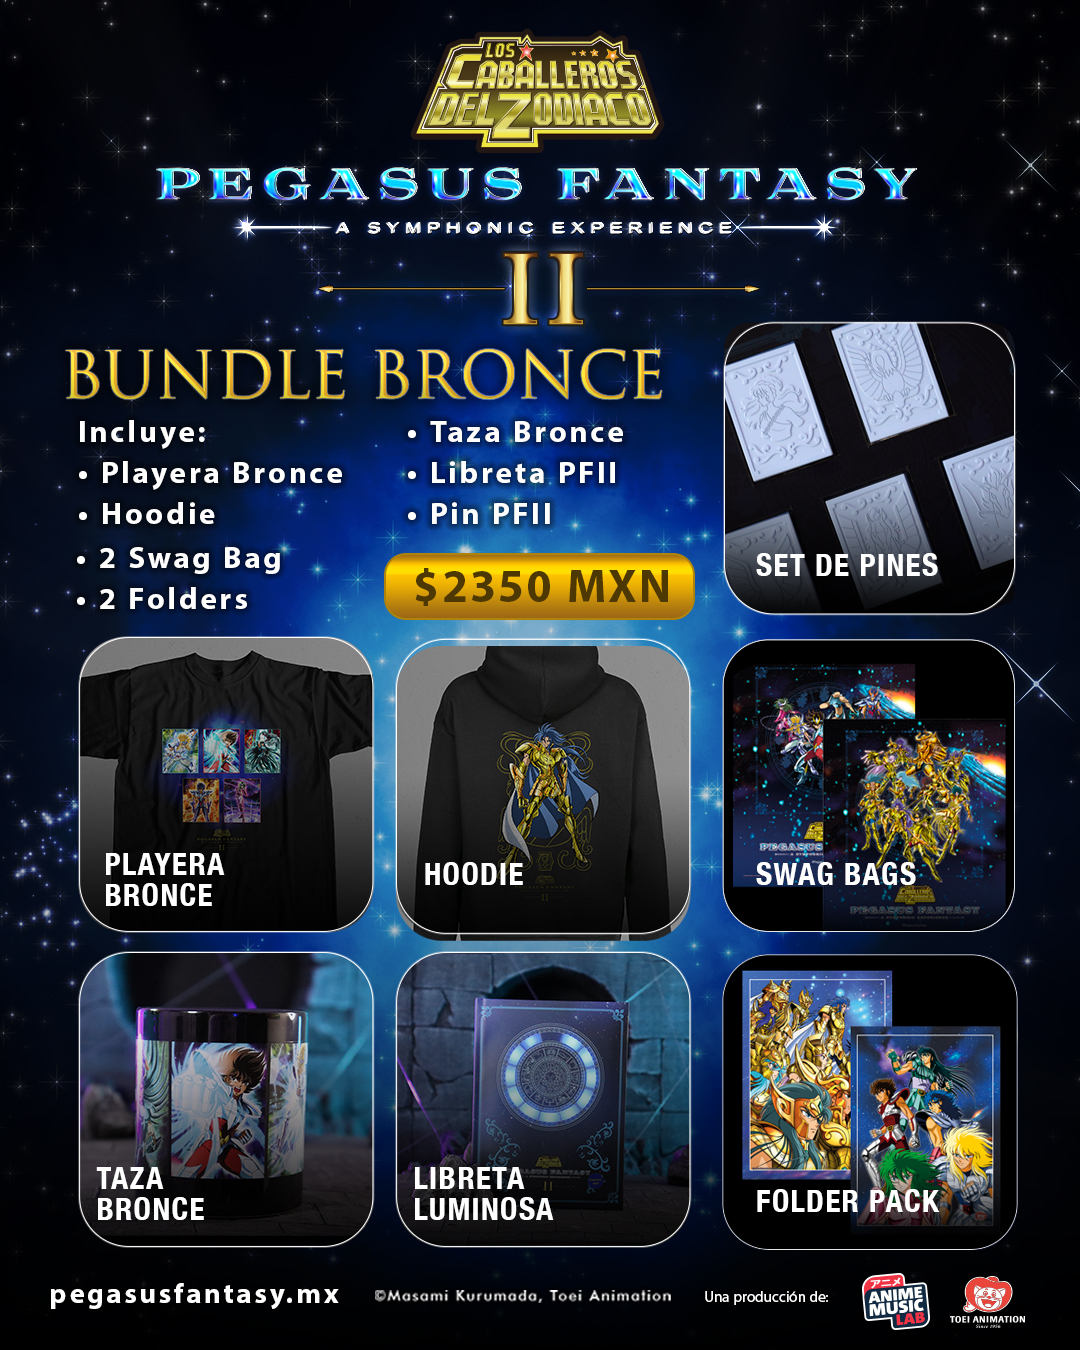 Pegasus Fantasy II - A symphonic experience nos deleita con su mercancía oficial 2